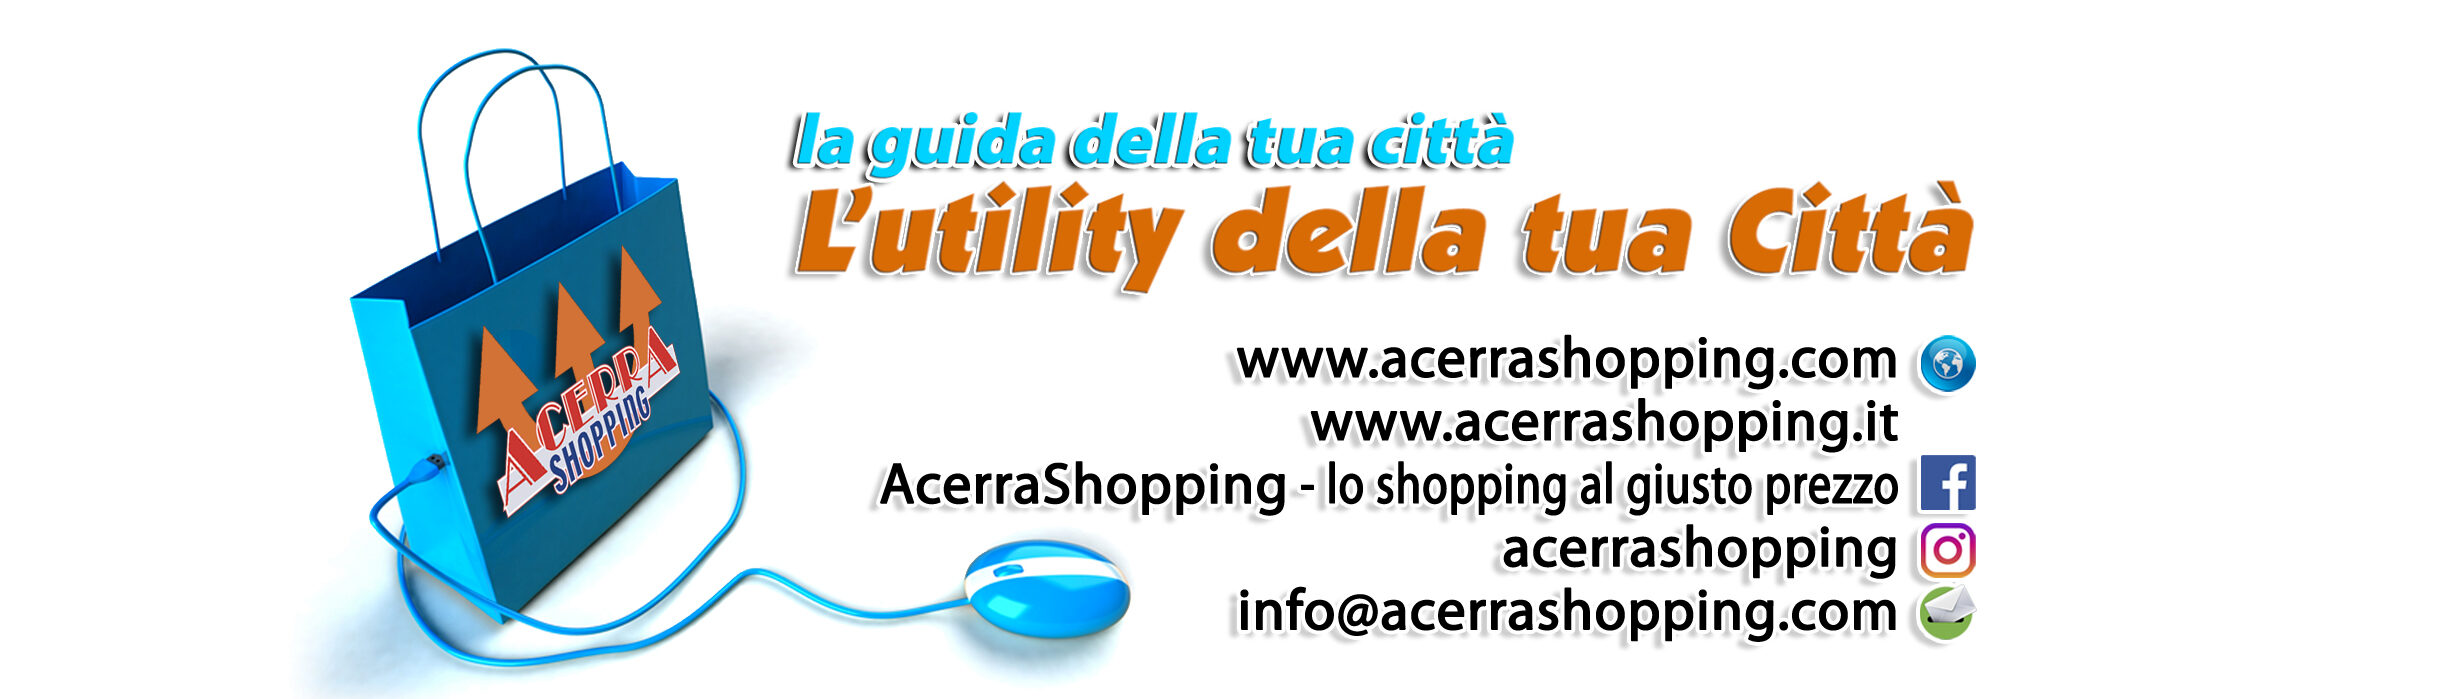 www.acerrashopping.com – lo shopping al prezzo giusto